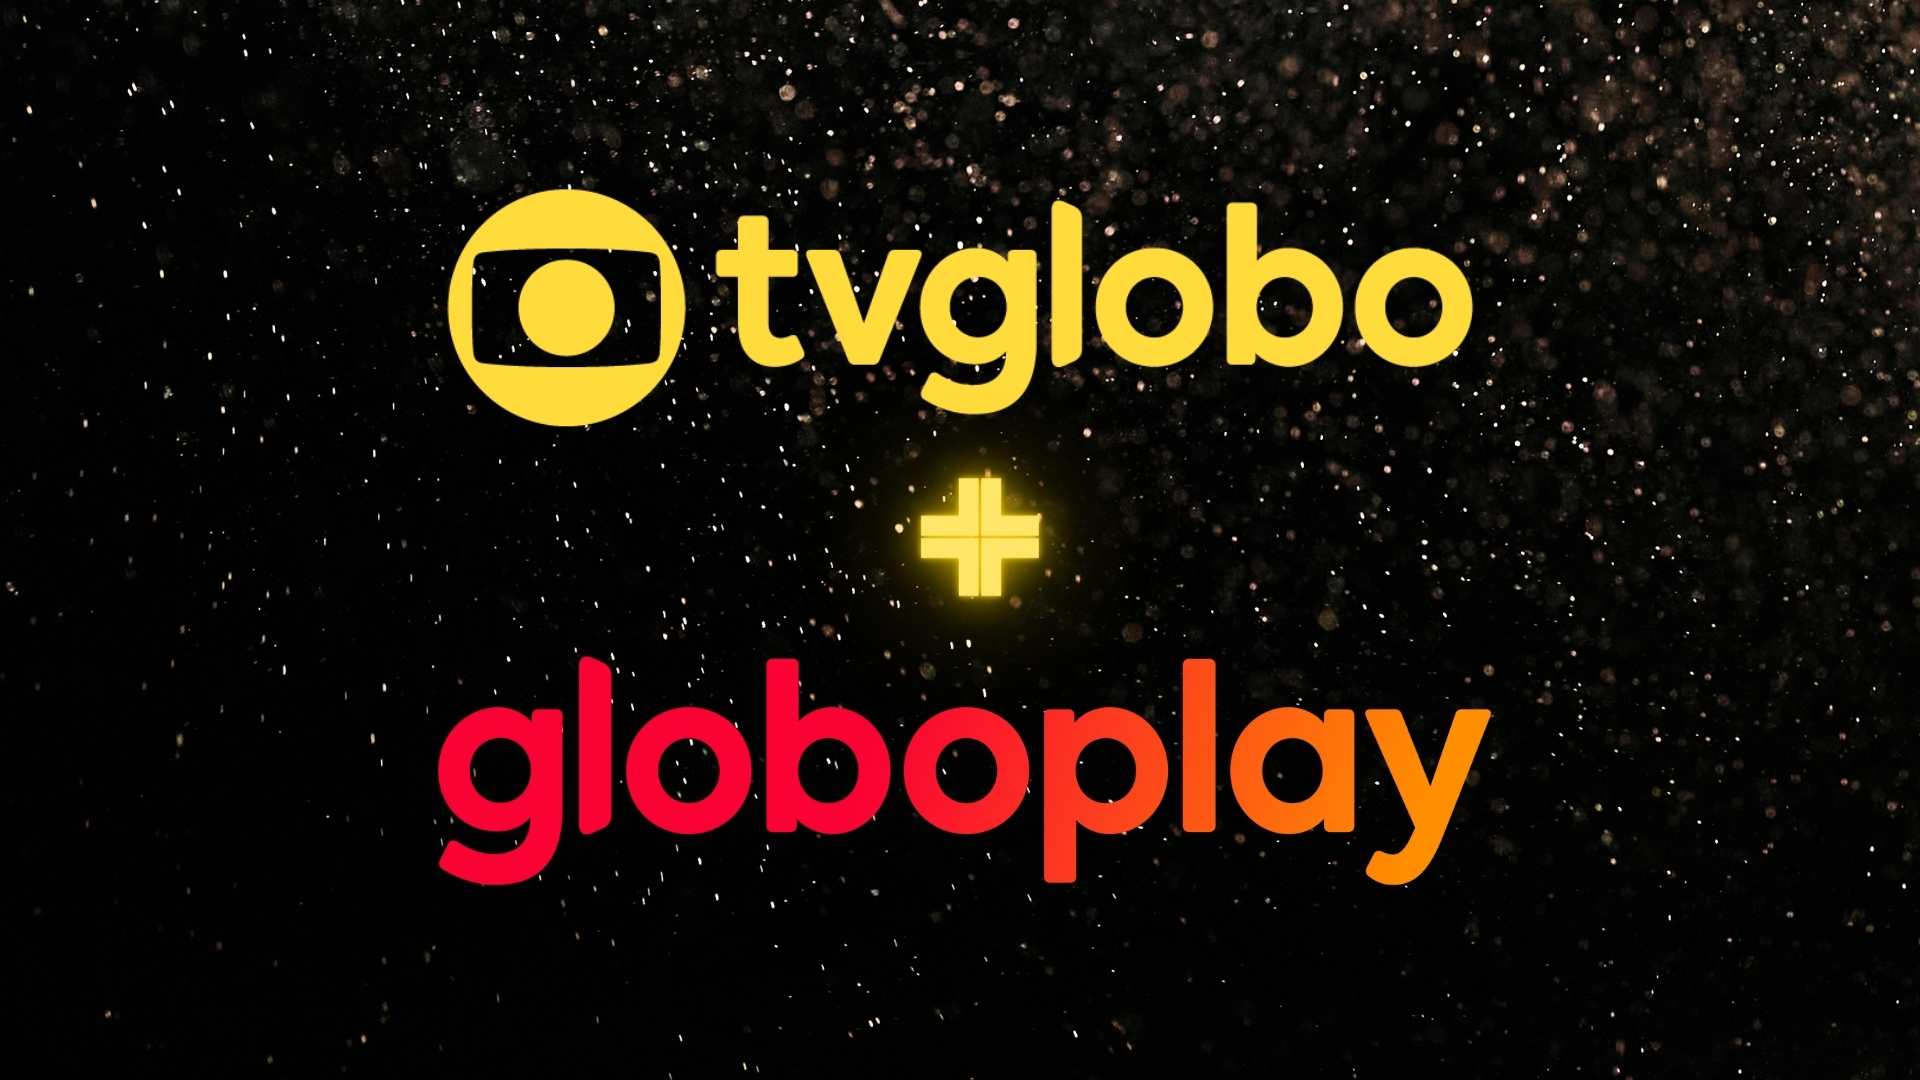 Choque de Culturavolta com novidades na Globo